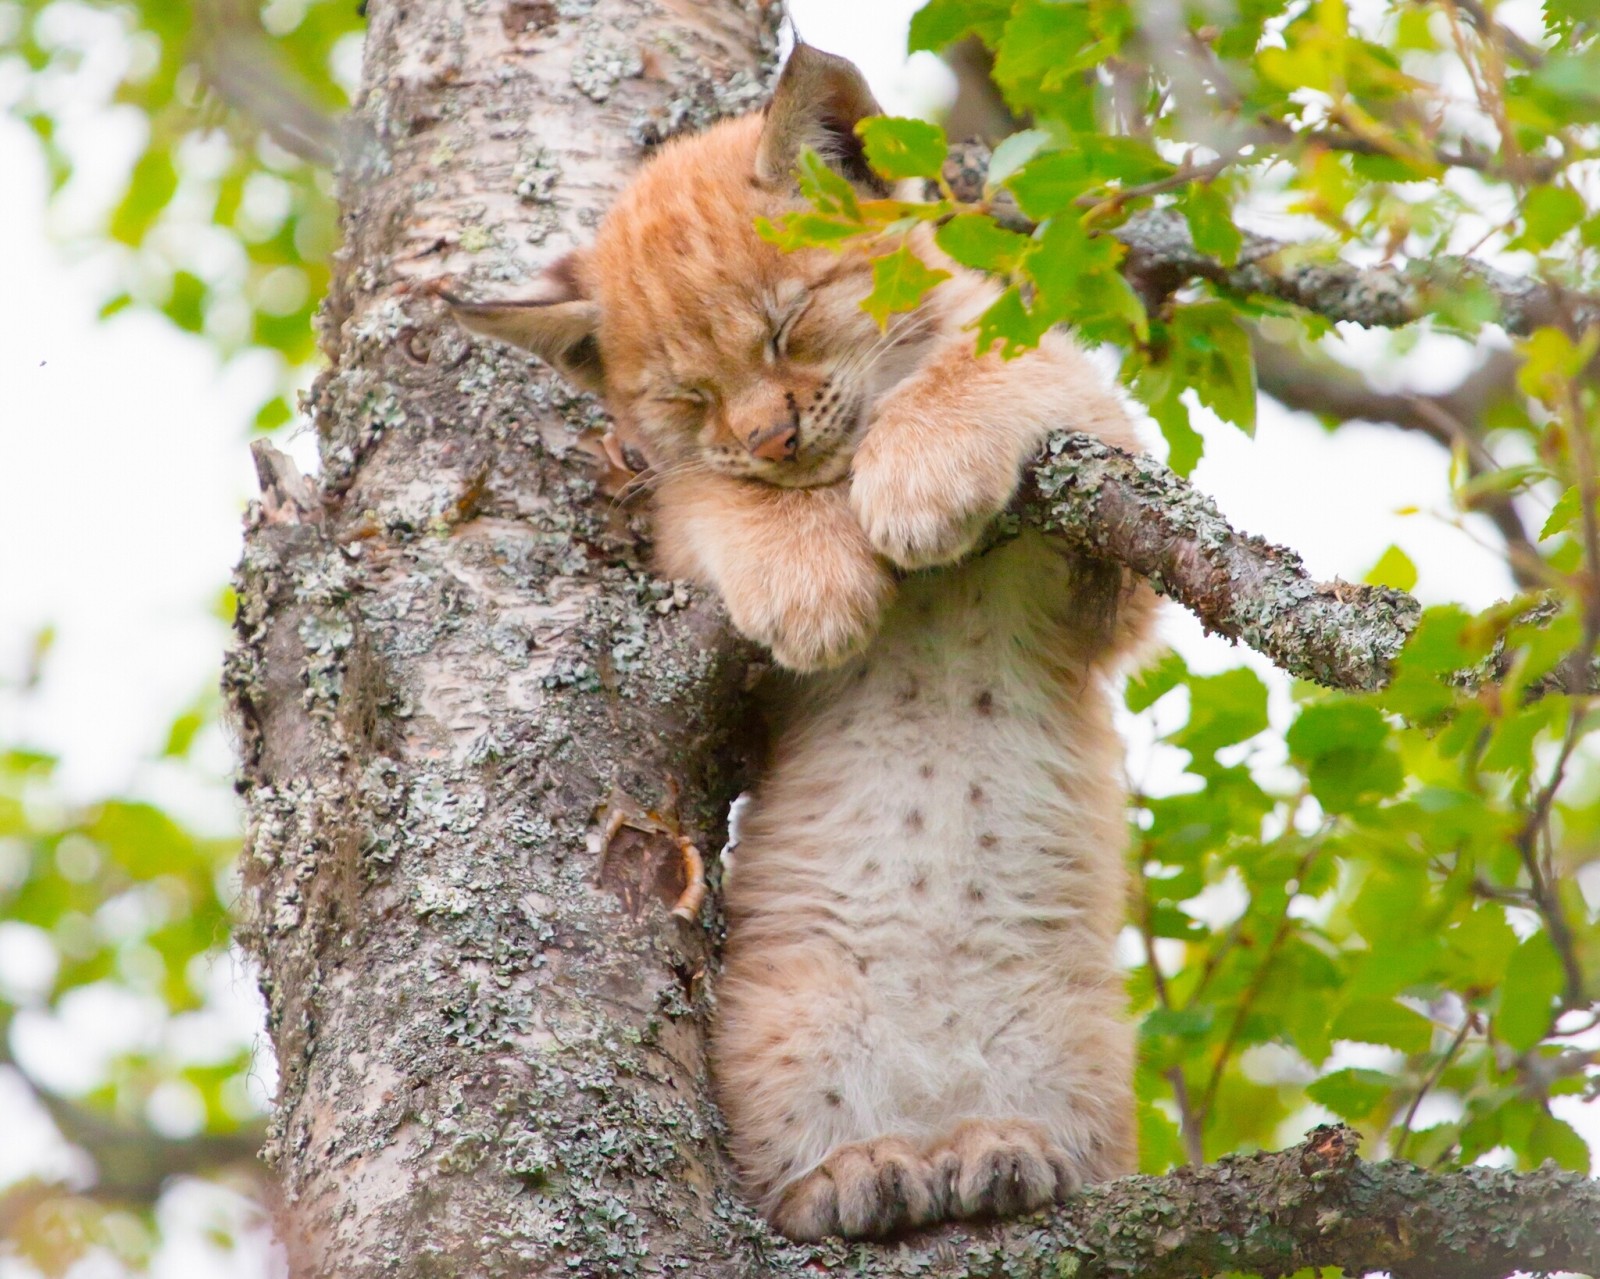 ต้นไม้, ทารก, ทารก, กองทุน, แมวป่าชนิดหนึ่ง, นอน, บนต้นไม้, แมวป่าชนิดเล็ก